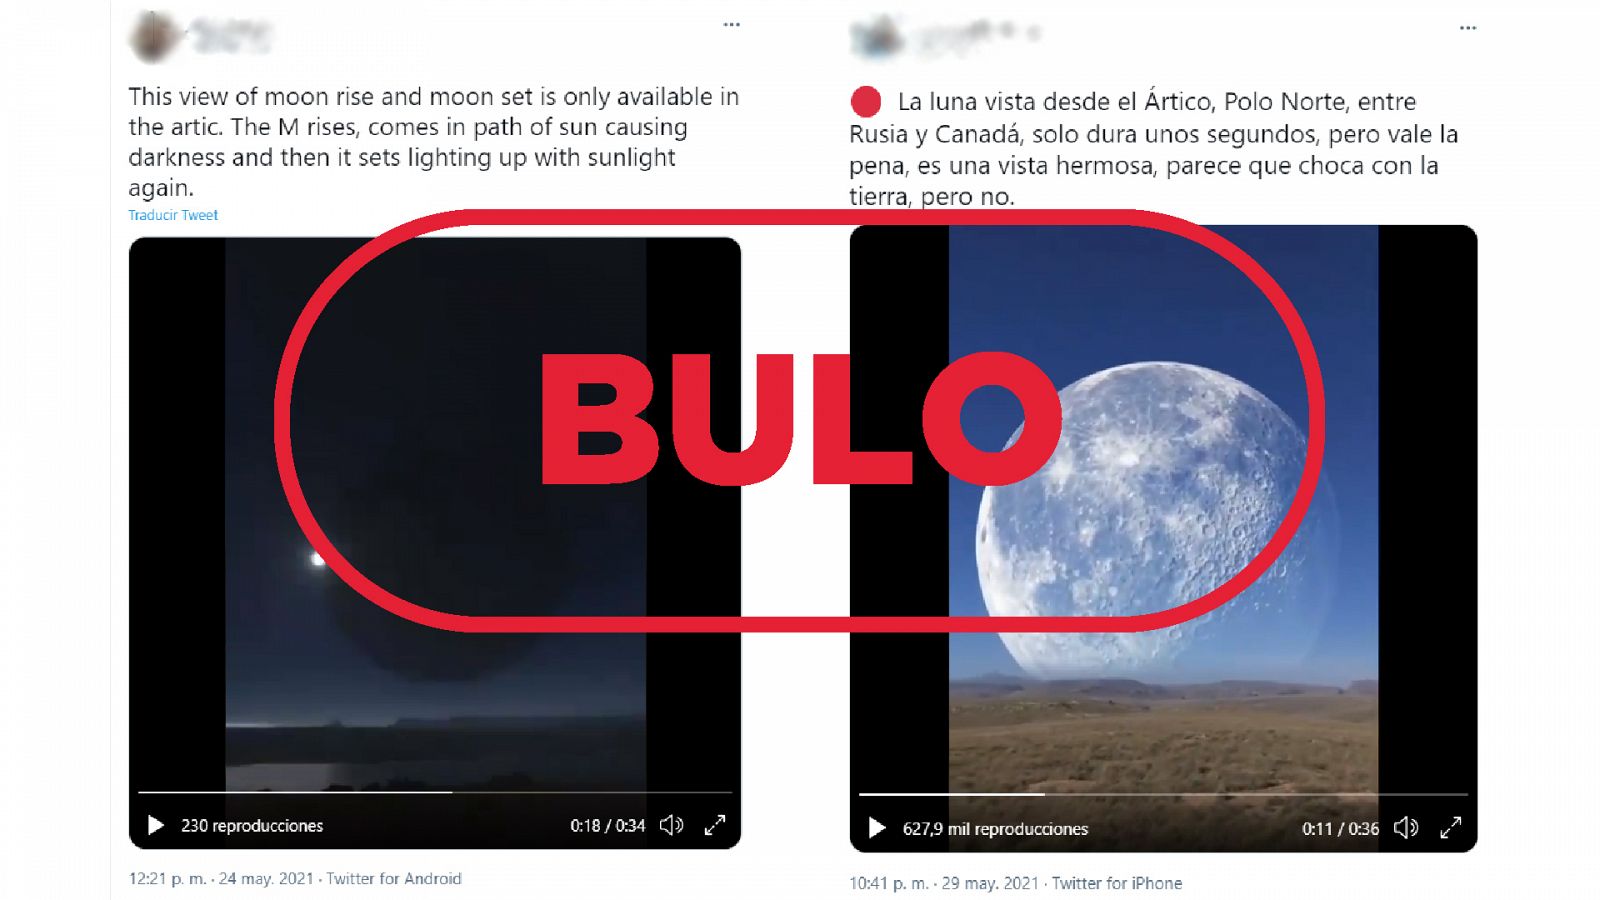 Dos mensajes de Twitter que muestran el vídeo falso de la Luna acercándose a la Tierra con el sello bulo en rojo de VerificaRTVE